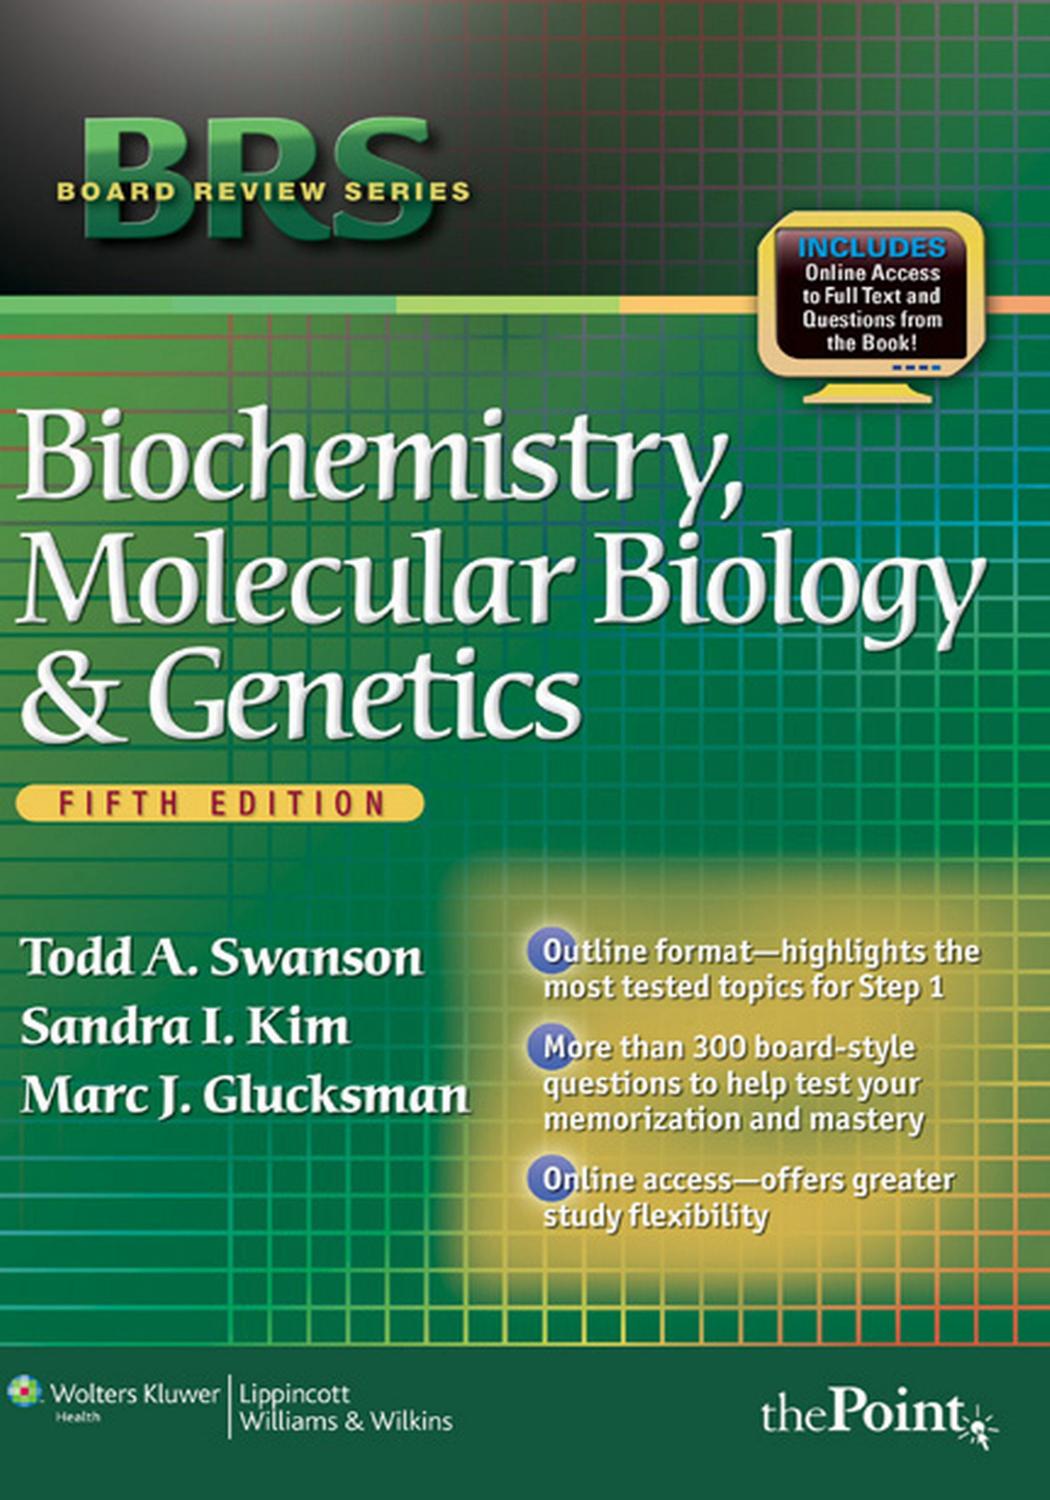 Biochemistry, Molecular Biology, and Genetics, Fifth Edition